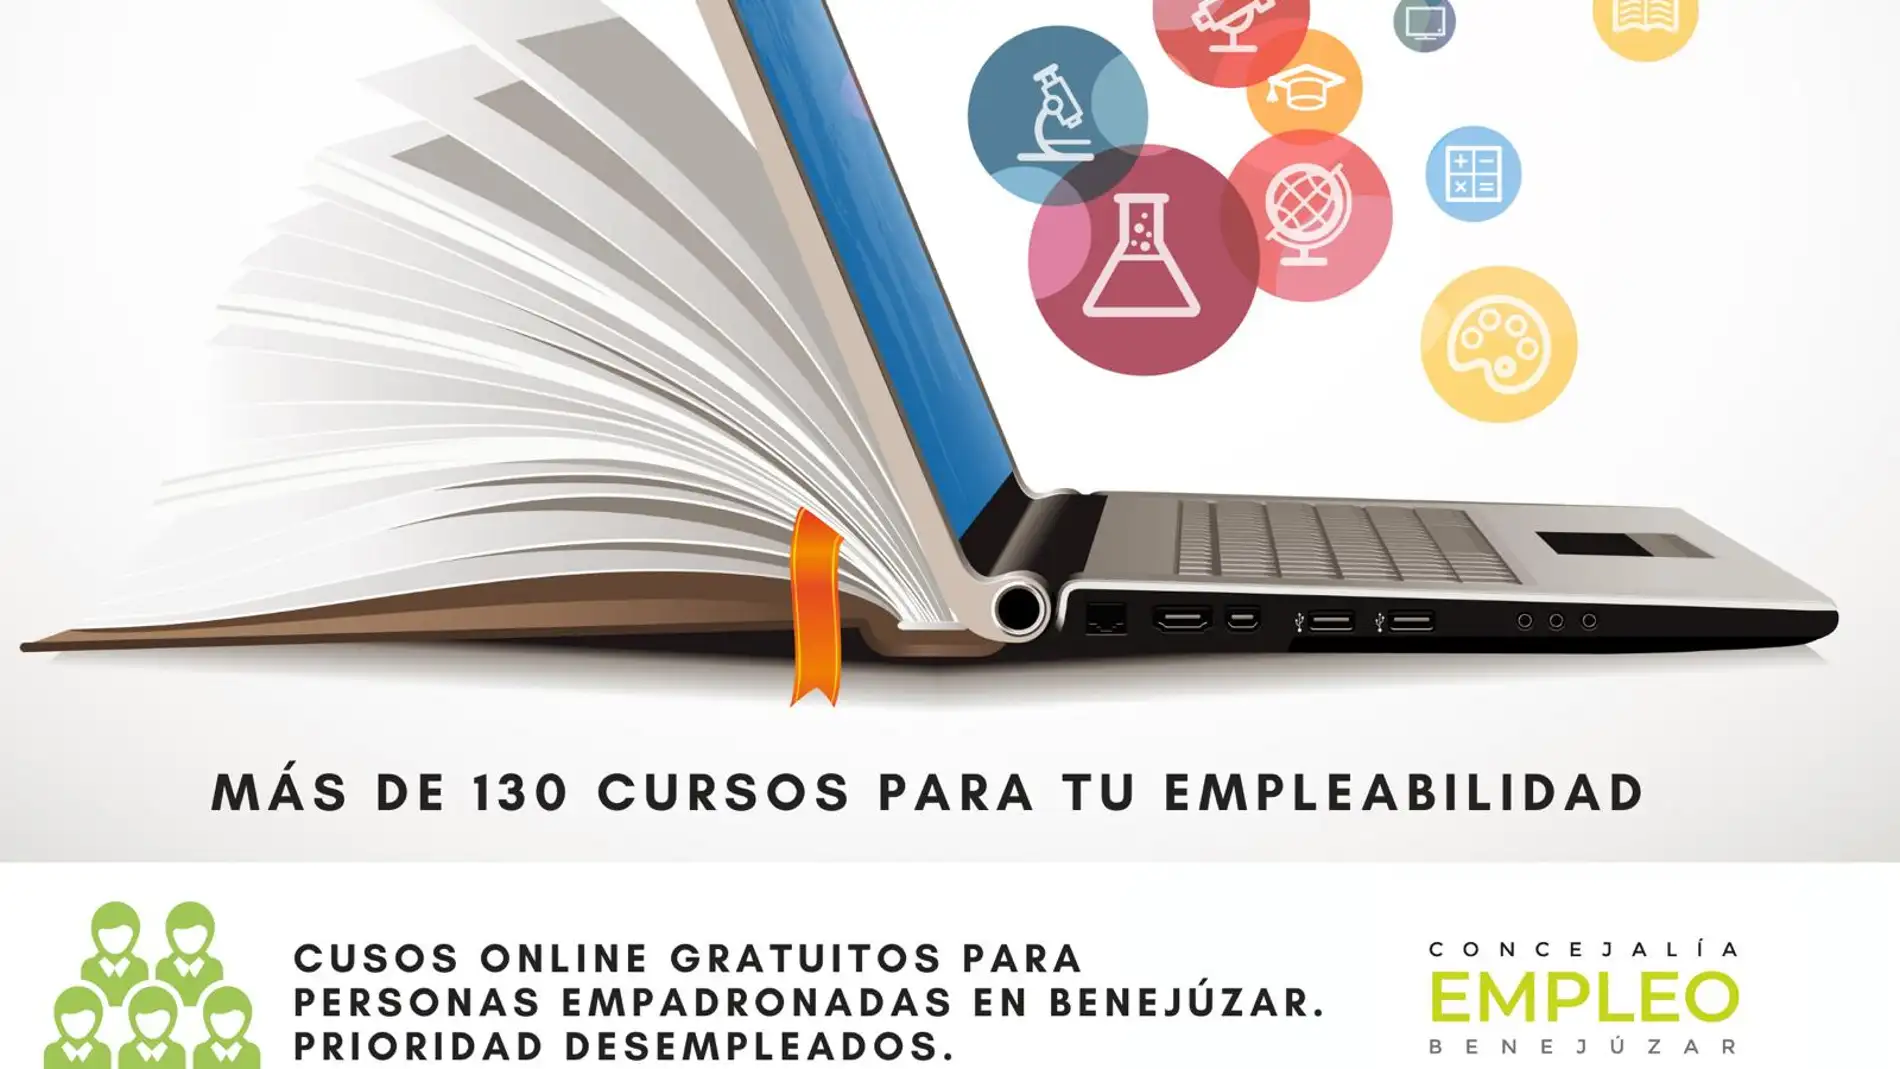 El innovador programa Aula Oposiciones complementa a la plataforma de formación gratuita con más de 130 cursos, y conforman las dos apuestas “Online” 